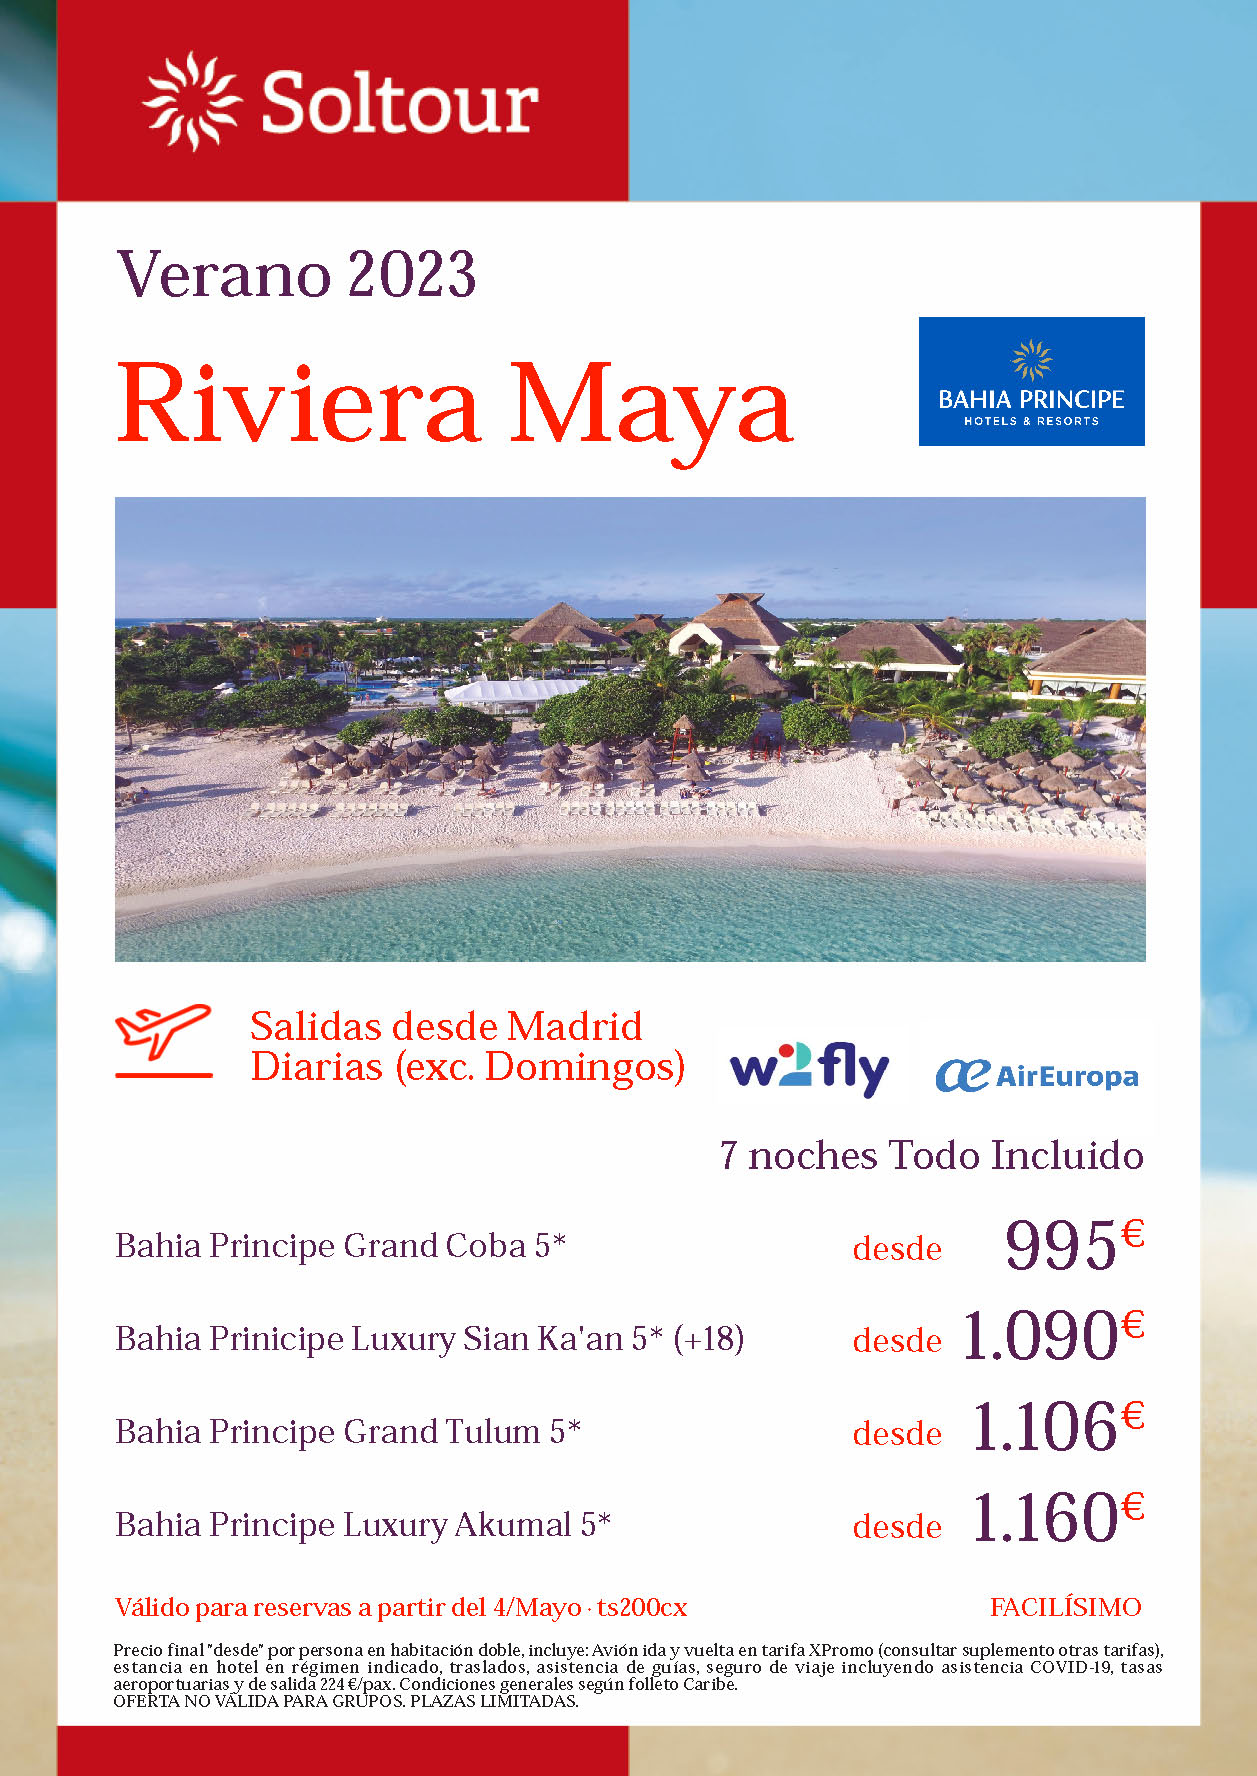 Oferta Soltour Verano 2023 Riviera Maya Hoteles Bahia Principe 5 estrellas Todo Incluido 9 dias salidas en vuelo directo desde Madrid vuelos W2fly y Air Europa